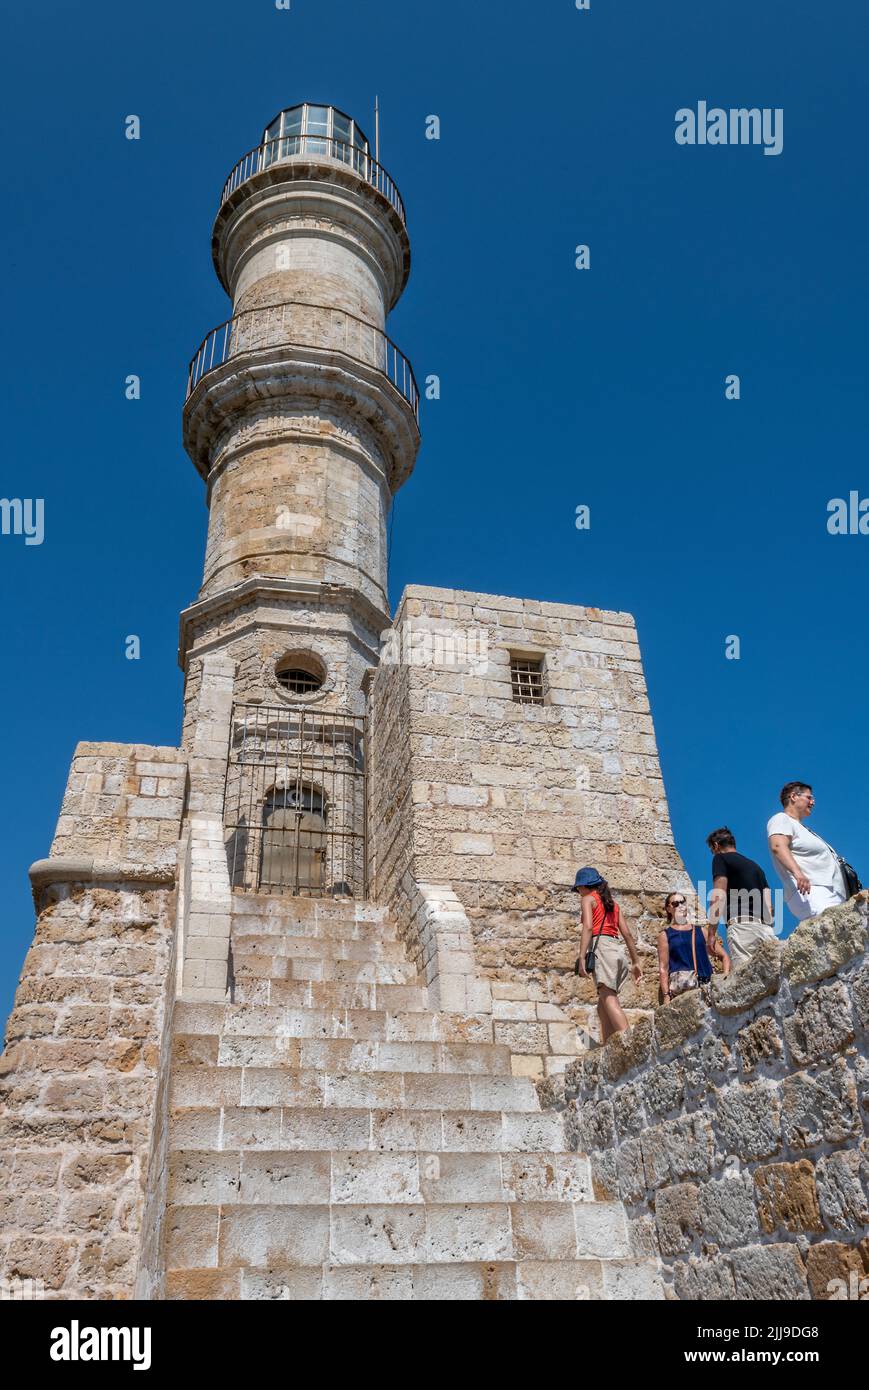 Der historische Leuchtturm am Eingang zum Hafen oder Hafen von chania auf der griechischen Insel kreta, Touristen besuchen die Stadt chania auf kreta. Stockfoto